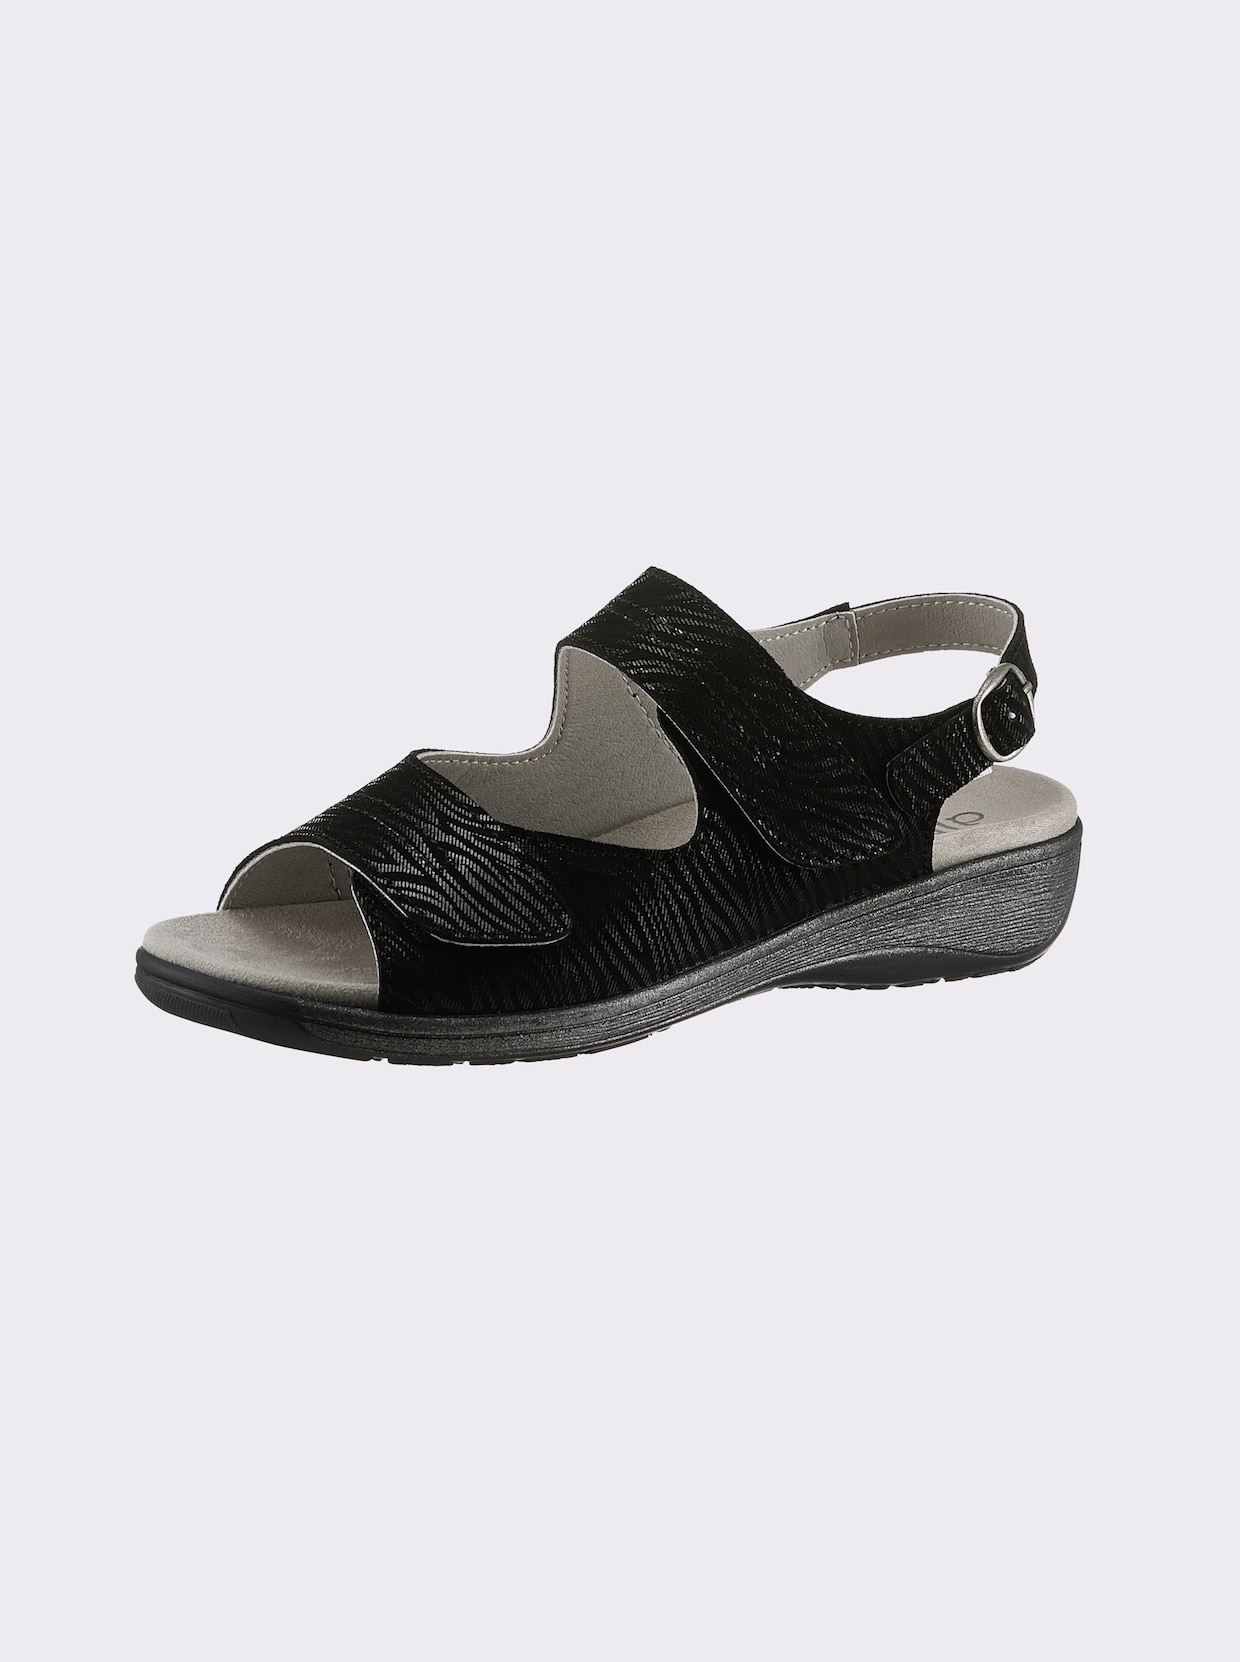 airsoft comfort+ Sandalette - schwarz